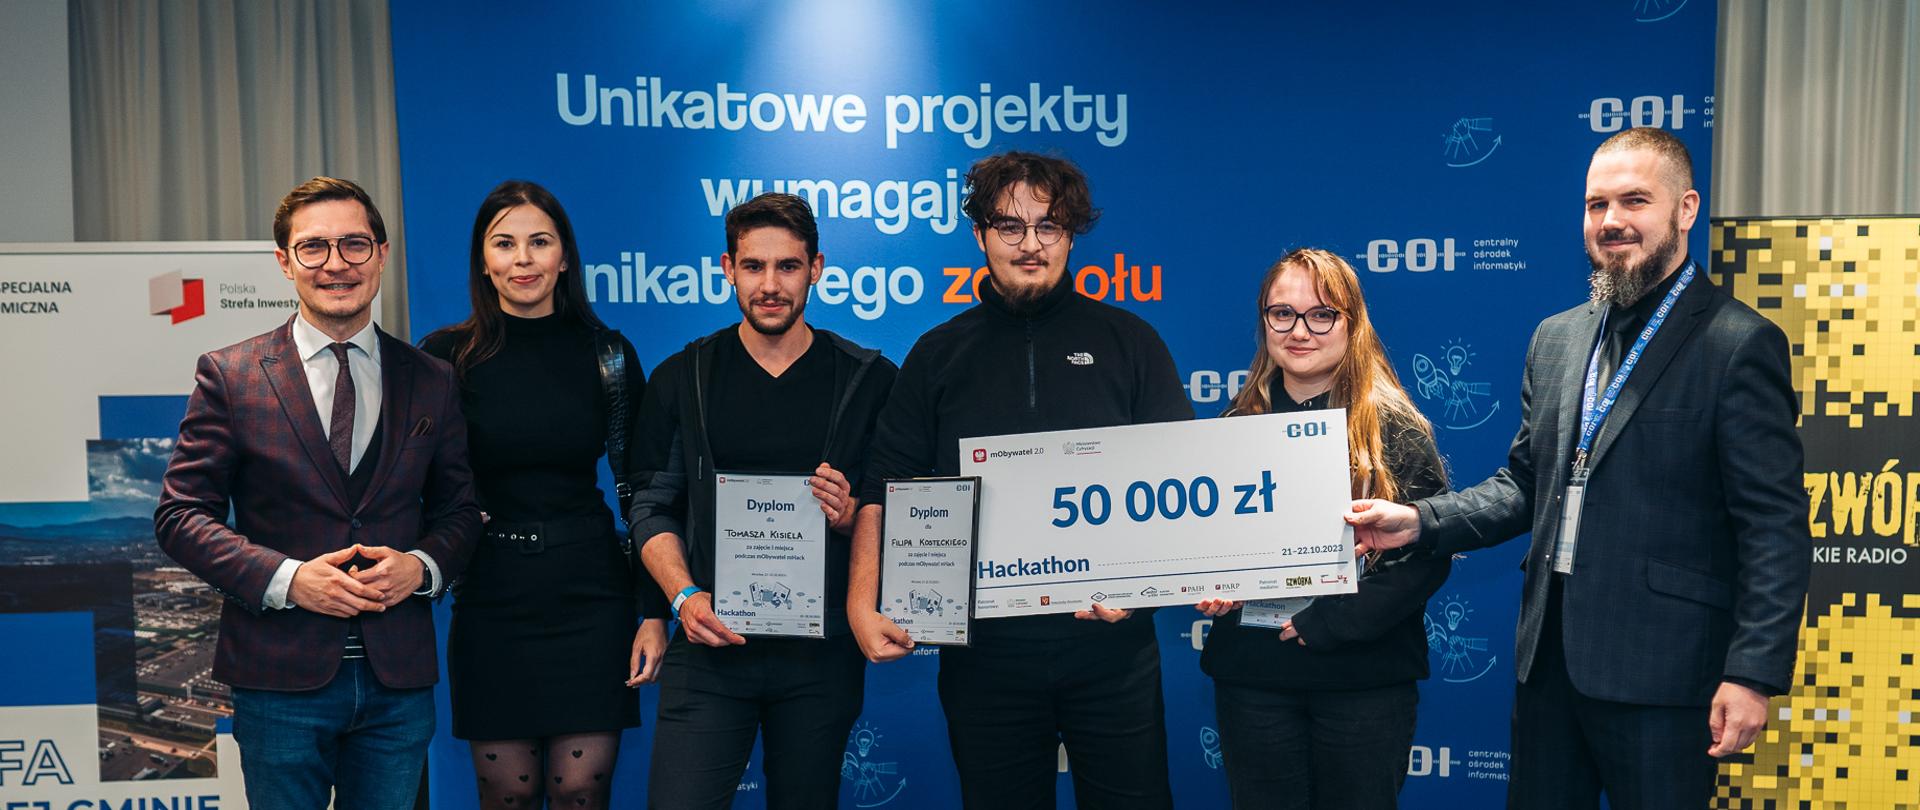 Wręczanie czeku na 50 tysięcy złotych zwycięzcom hackathonu.